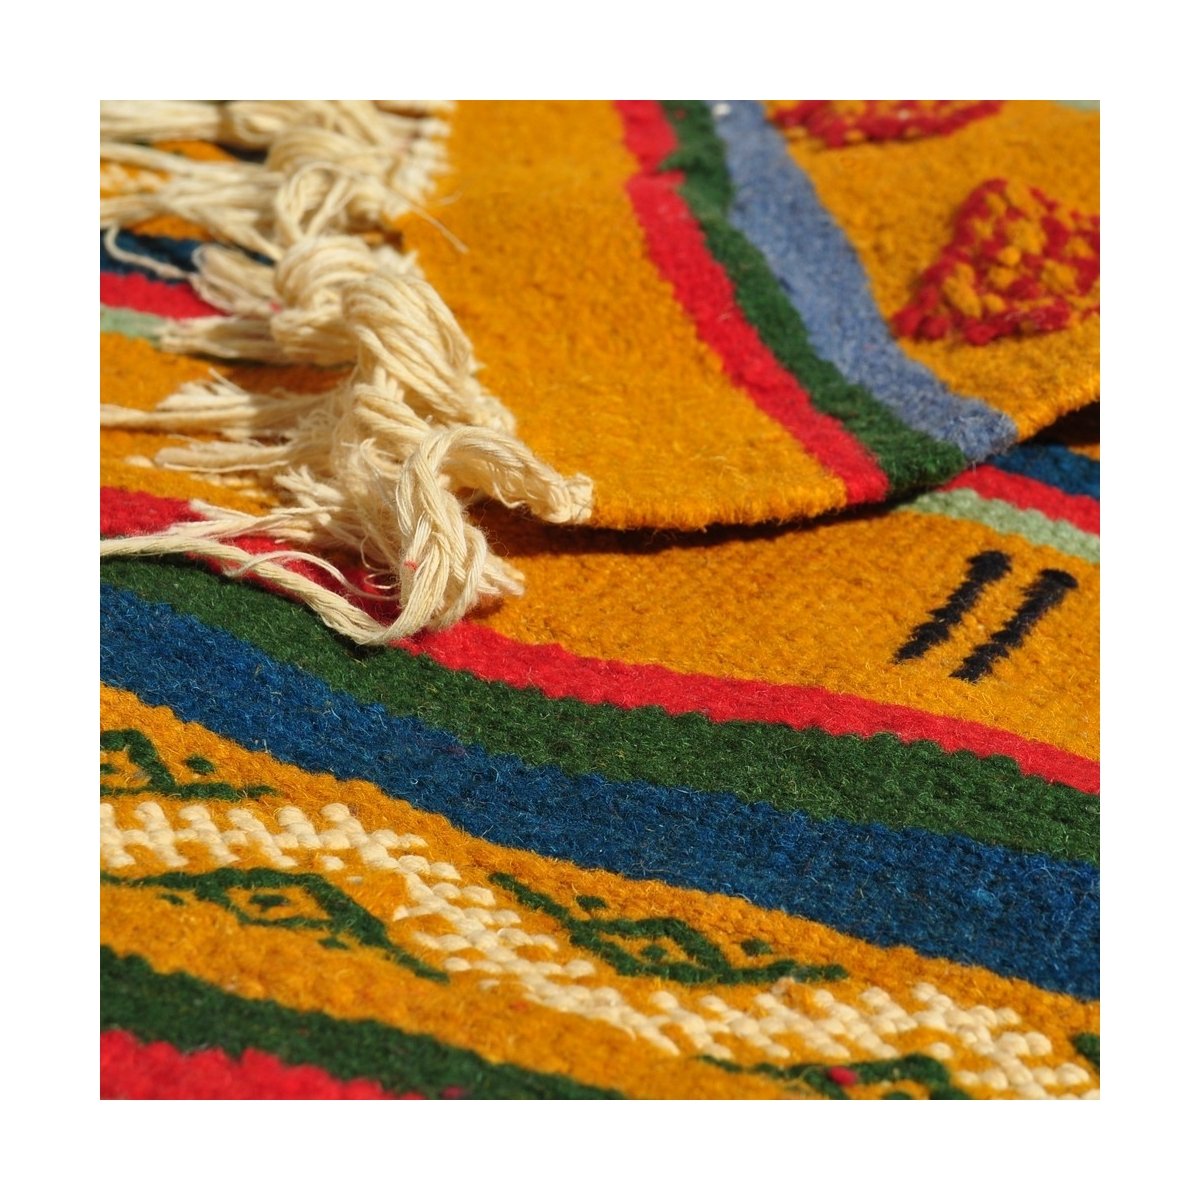 Berber Teppich Teppich Kelim Ouarzazate 125x245 Gelb/Mehrfarbig (Handgewebt, Wolle) Tunesischer Kelim-Teppich im marokkanischen 